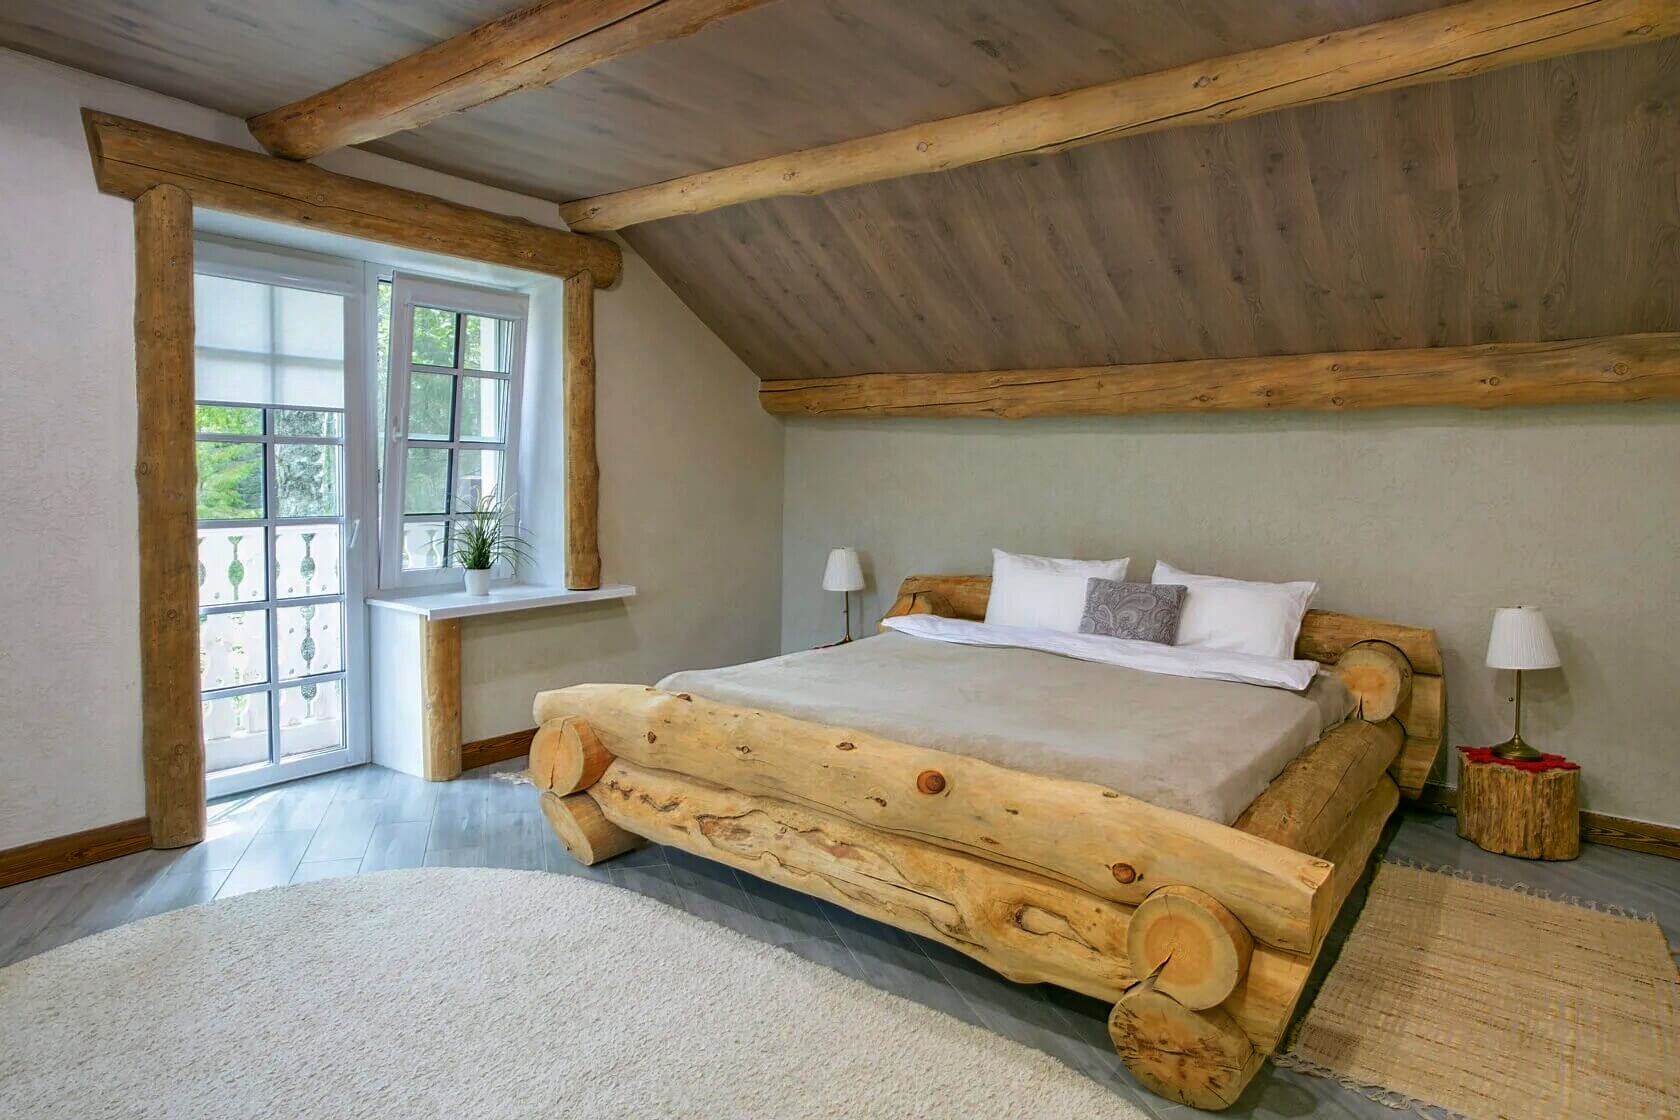 Основание кровати в номере выполнено из массивных бревен.